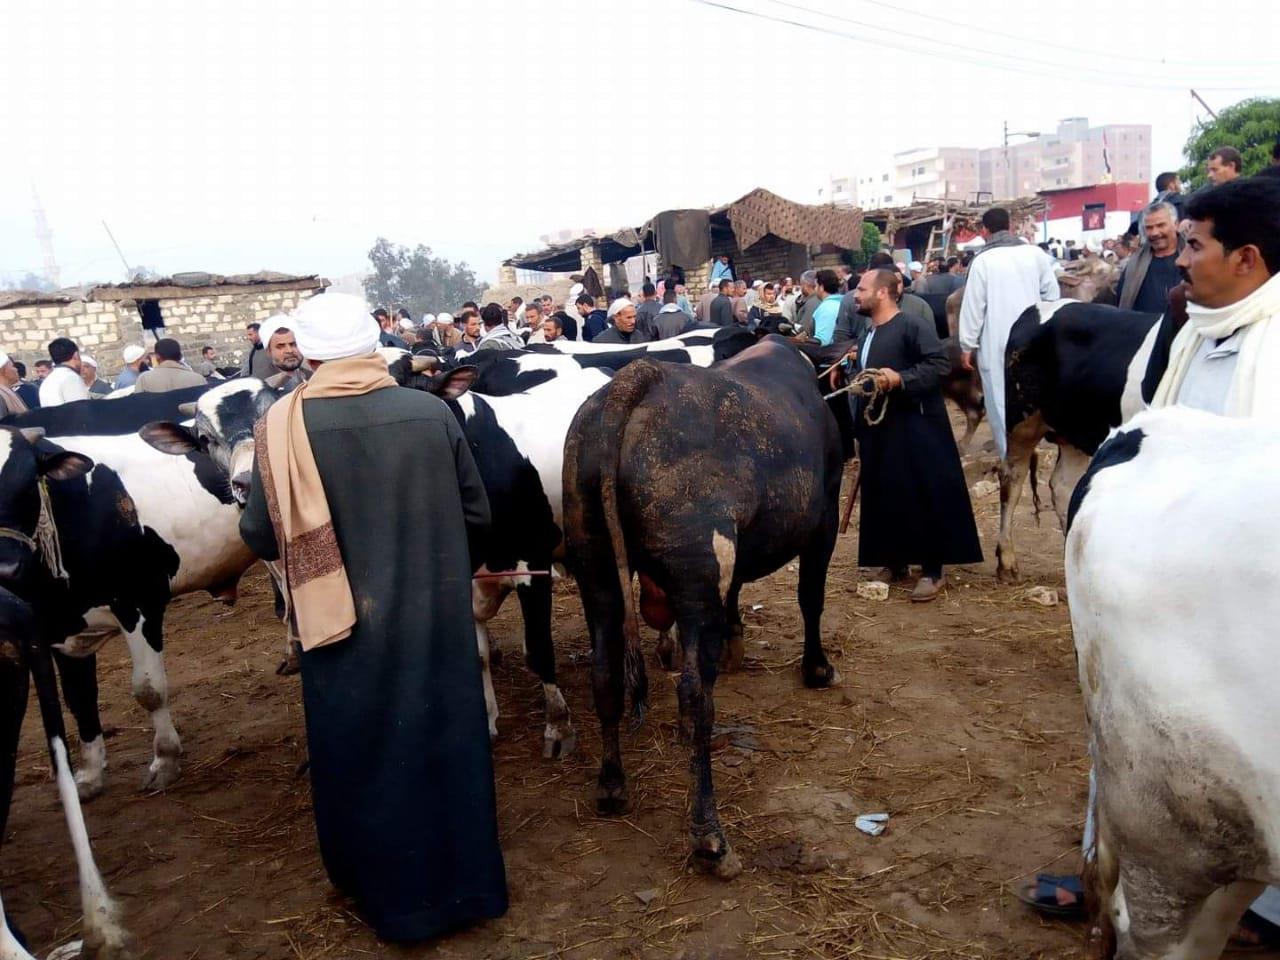 مربو الماشية بالفيوم يلجأون لبيعها للجزارين                                                                                                                                                             